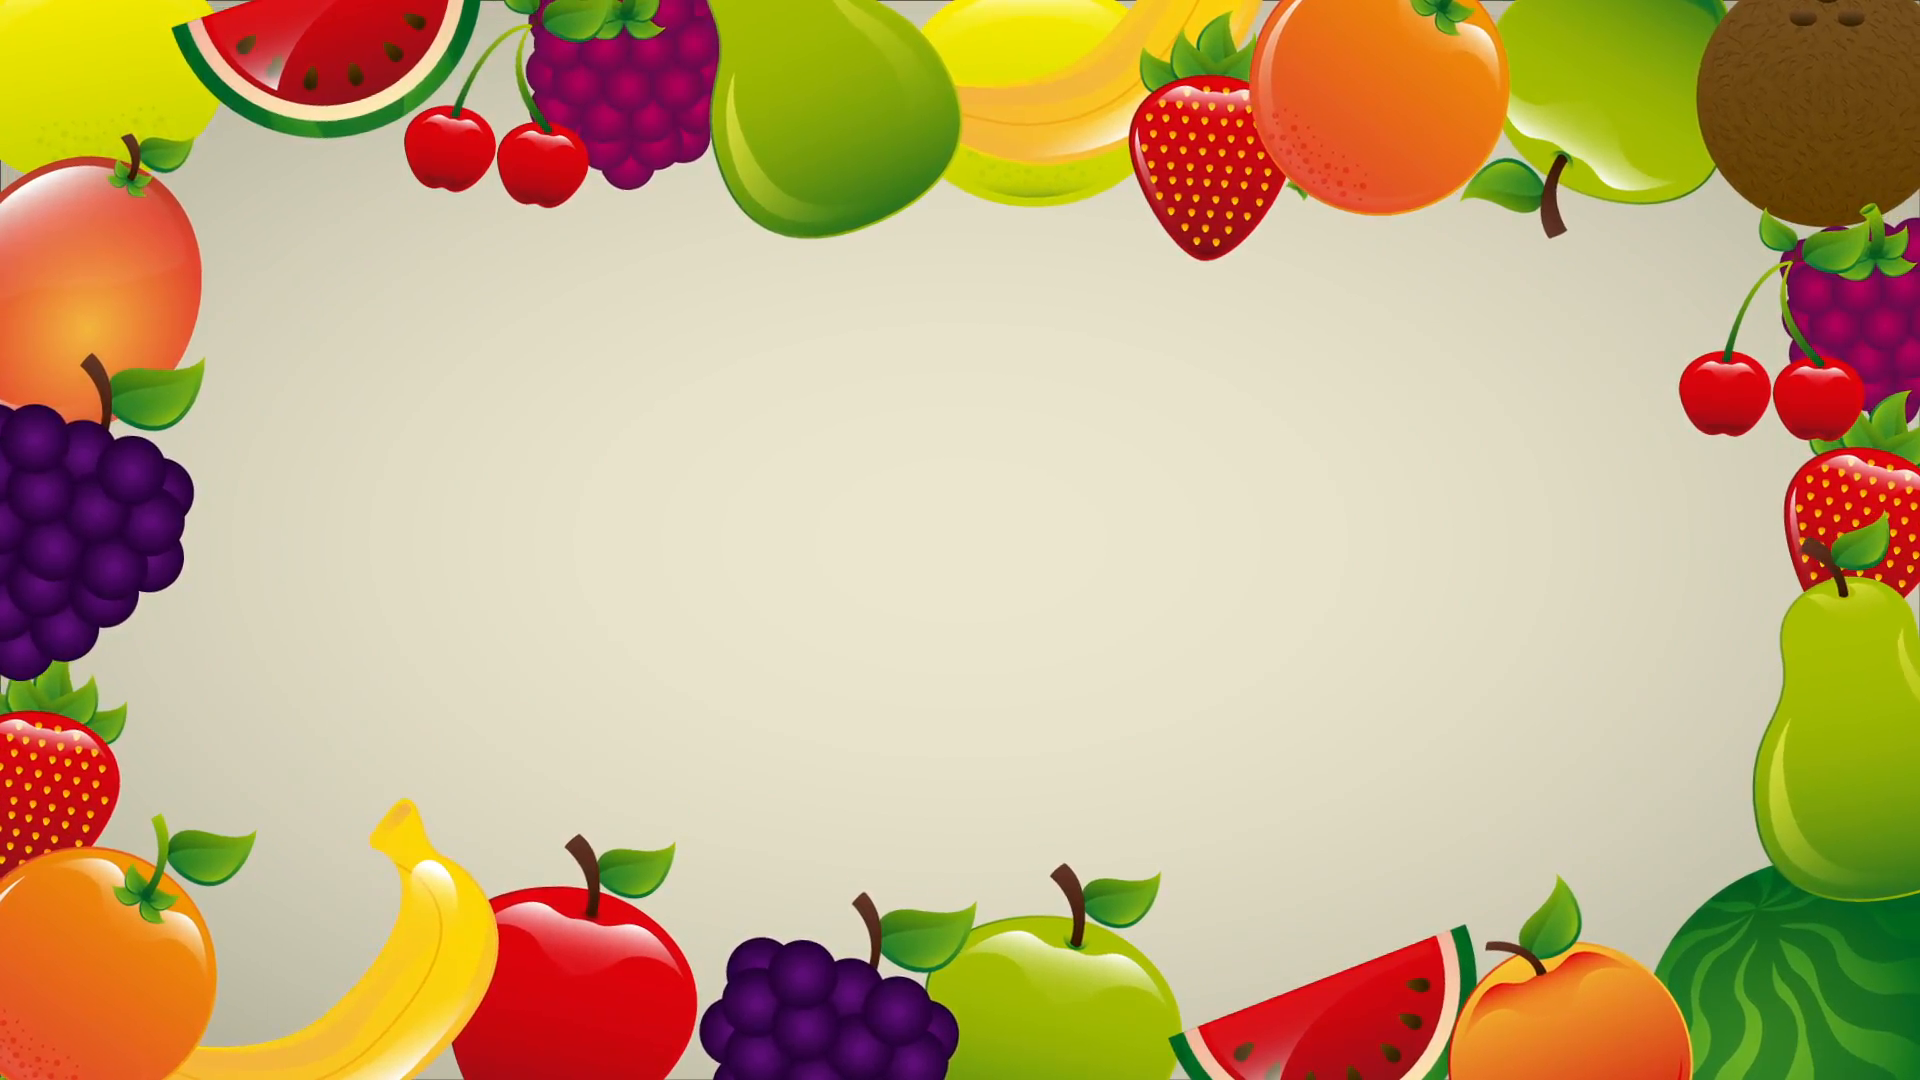 Fruits background photo